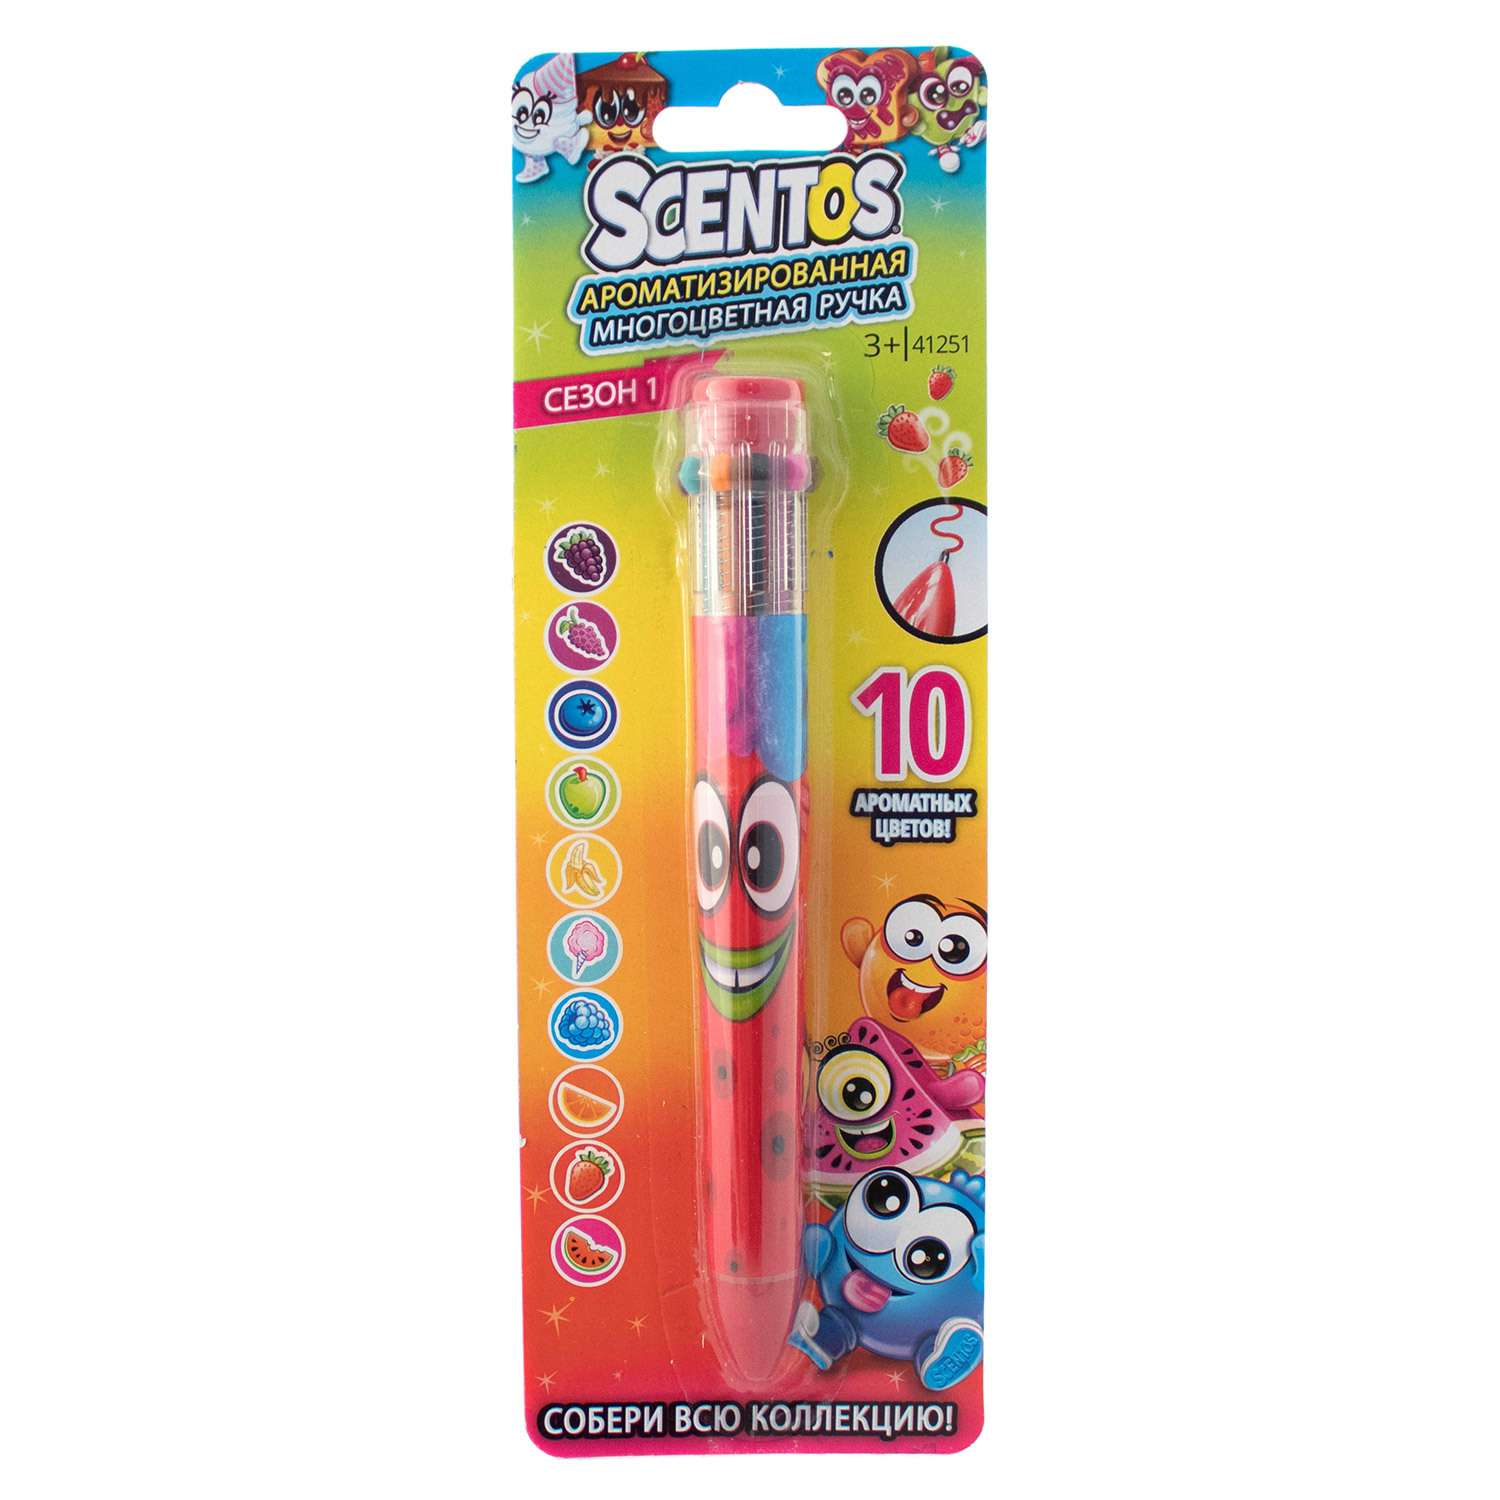 Ручка шариковая Scentos ароматизированная 10цветов 41253 - фото 2